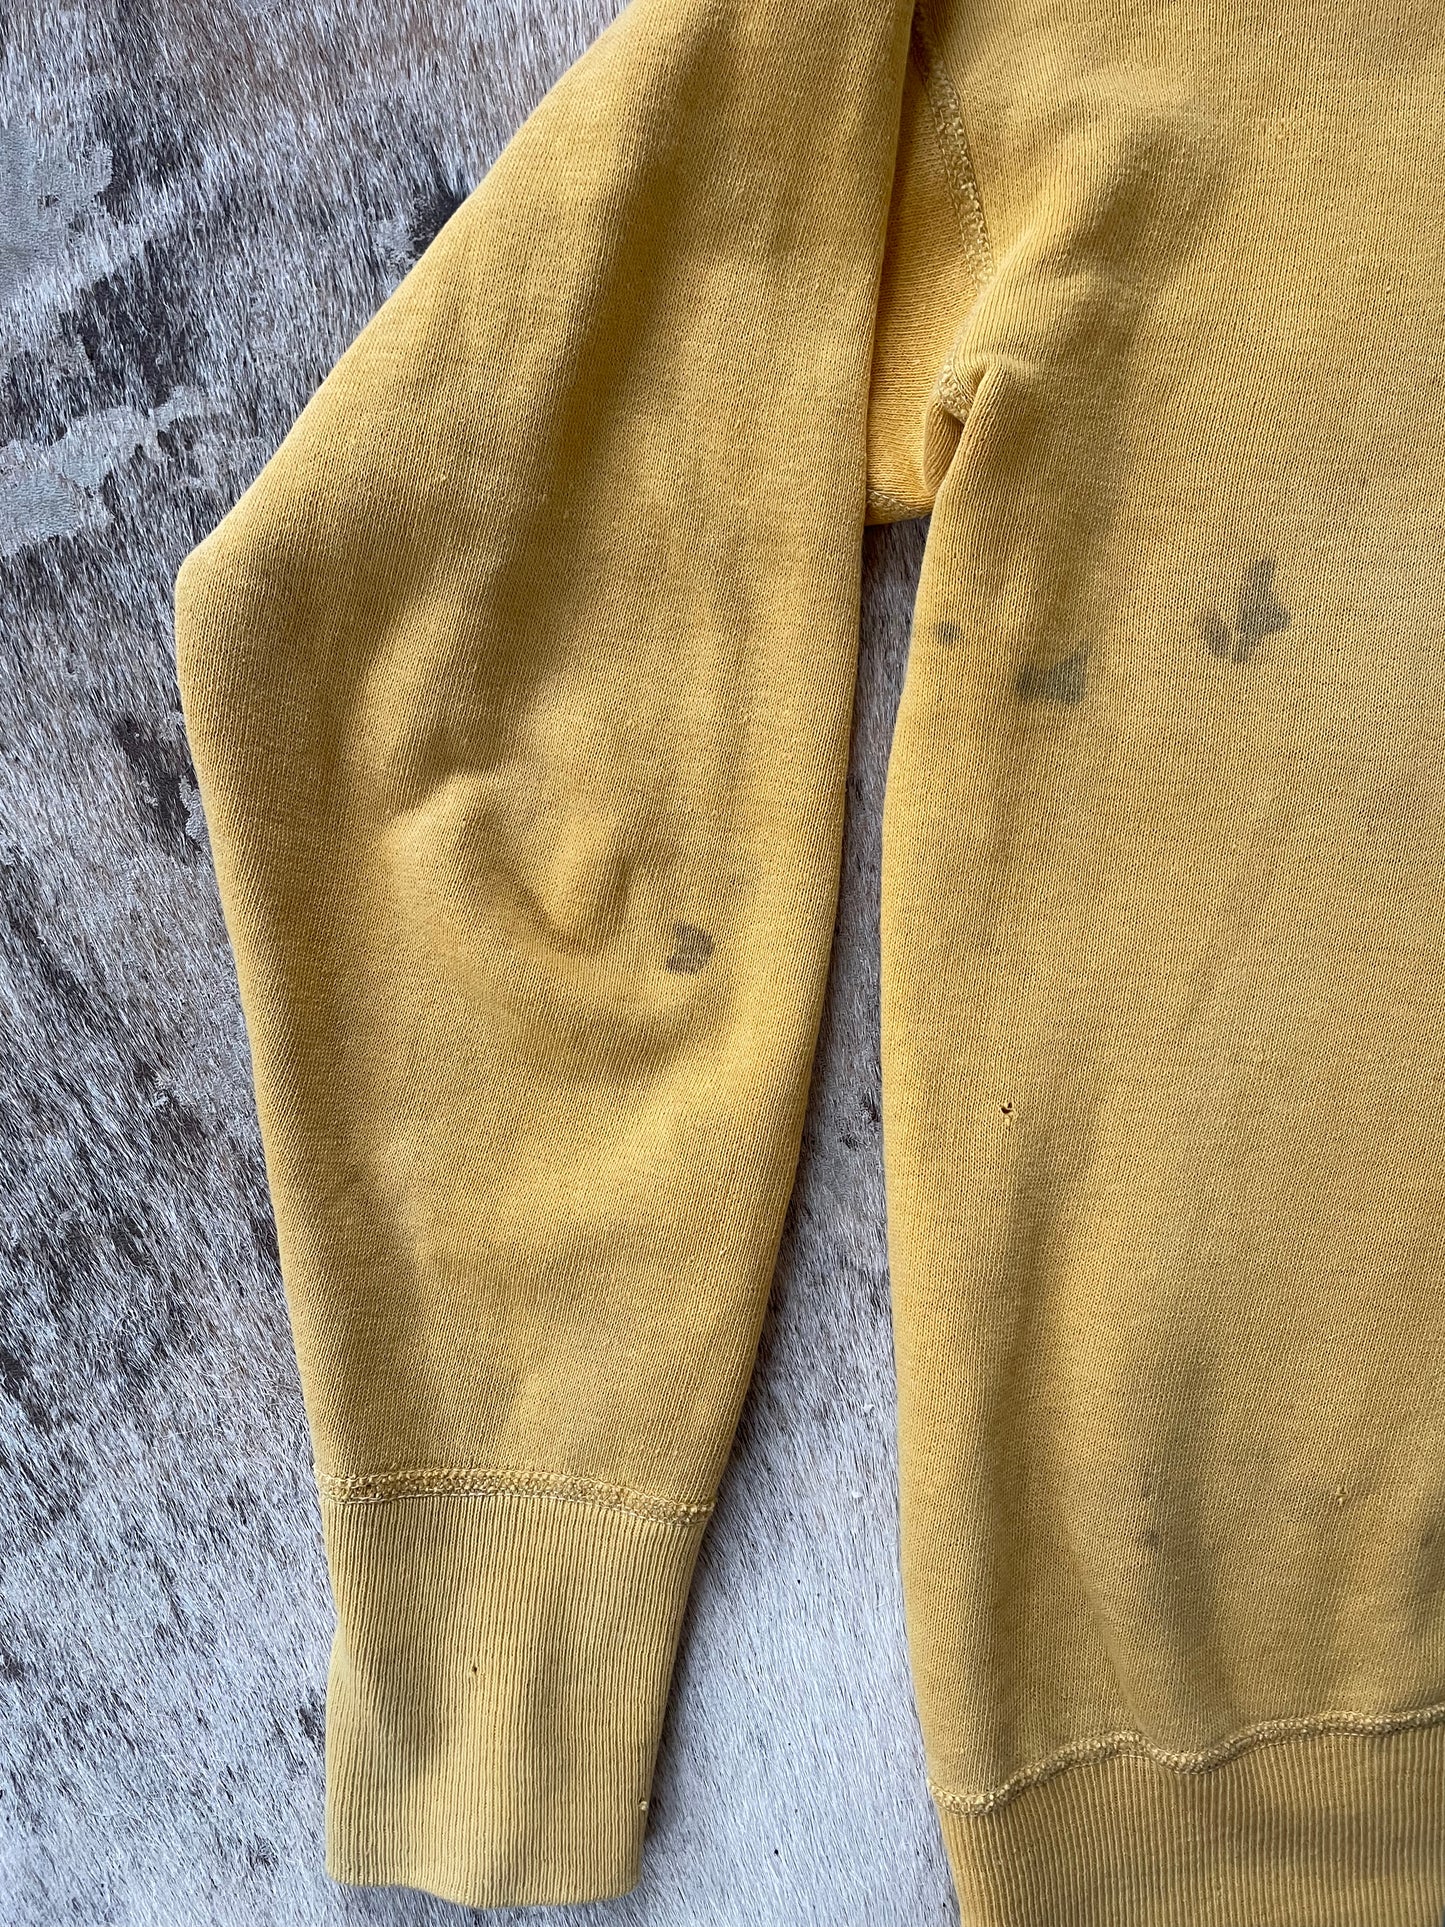 50s/60s Mustard Quarter Zip Sweatshirt